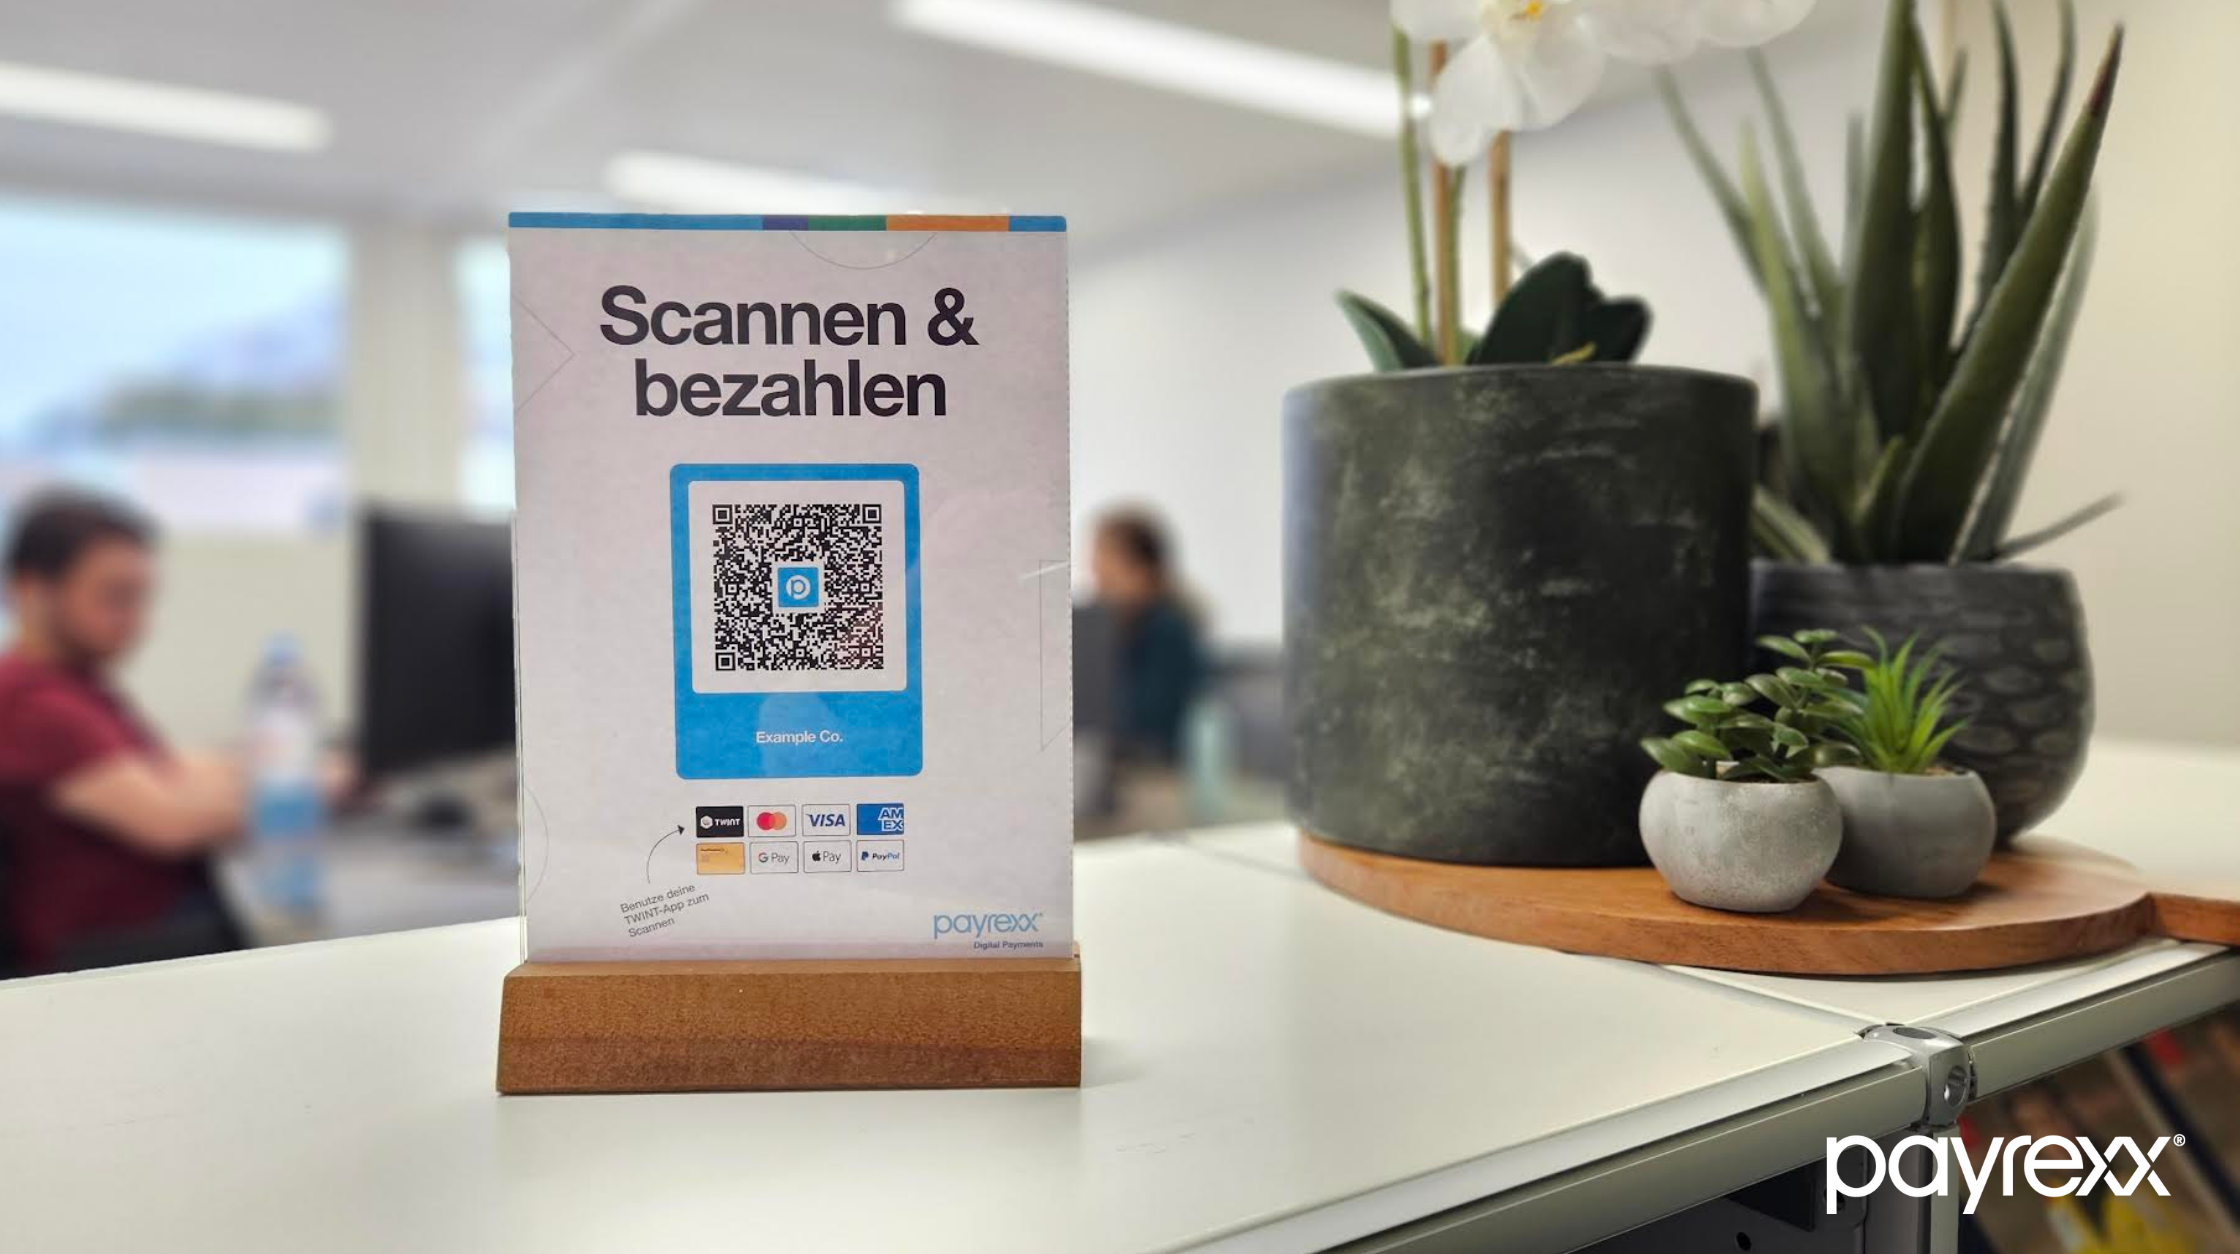 "Payrexx QR Pay" wordt geëerd met de Innovatieprijs van de Berner Oberland Economie